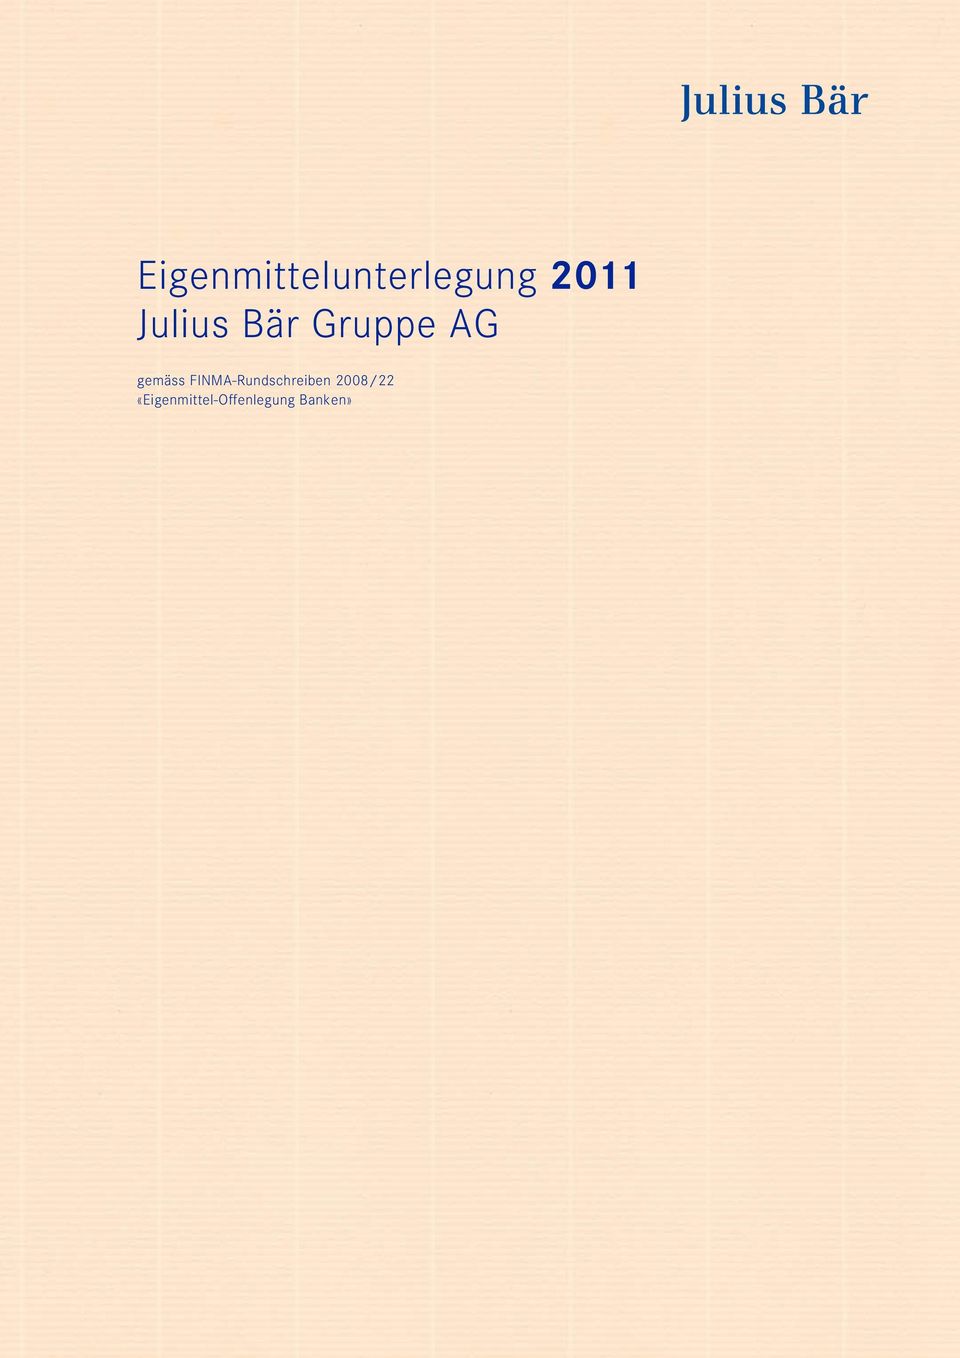 FINMA-Rundschreiben 2008/22